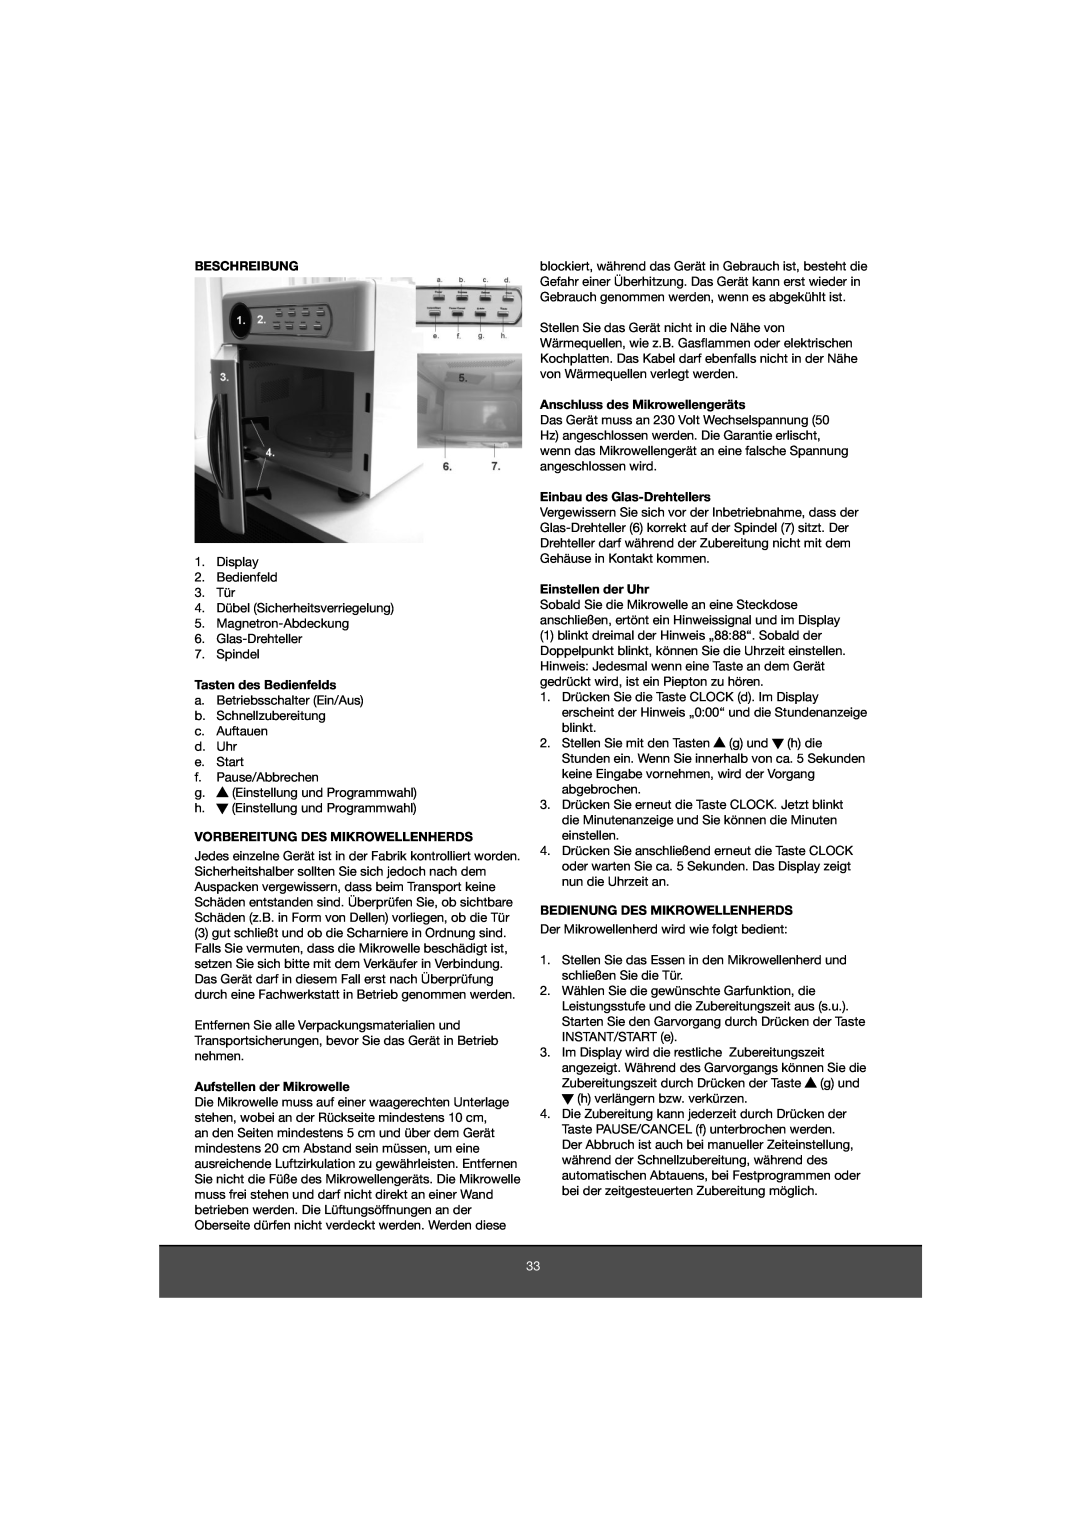 Melissa 653-081 manual Beschreibung, Tasten des Bedienfelds, Vorbereitung Des Mikrowellenherds, Aufstellen der Mikrowelle 